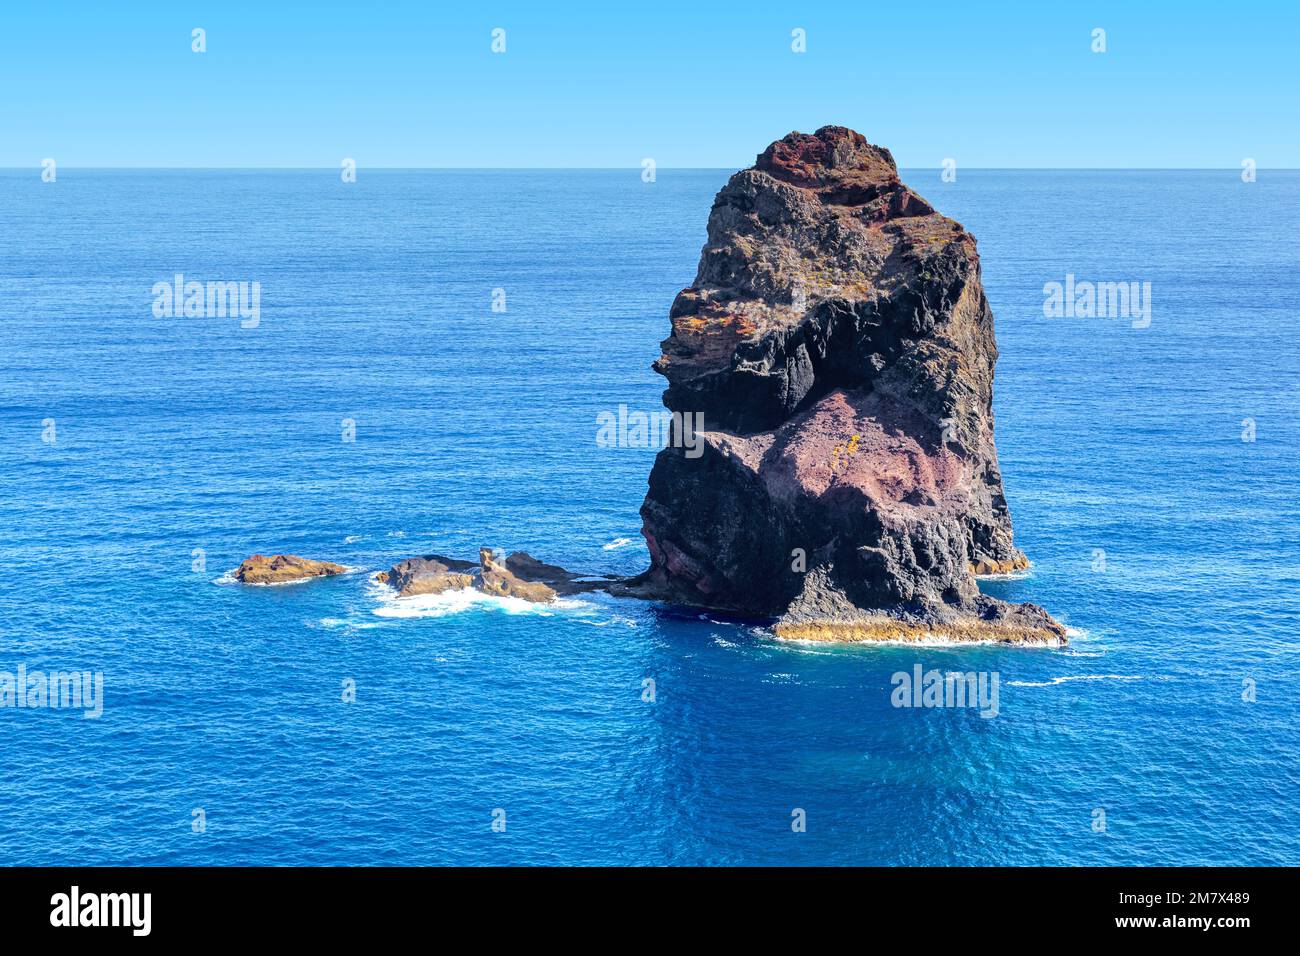 C'est un récif côtier d'origine volcanique au large de la côte de l'île de Madère. Banque D'Images